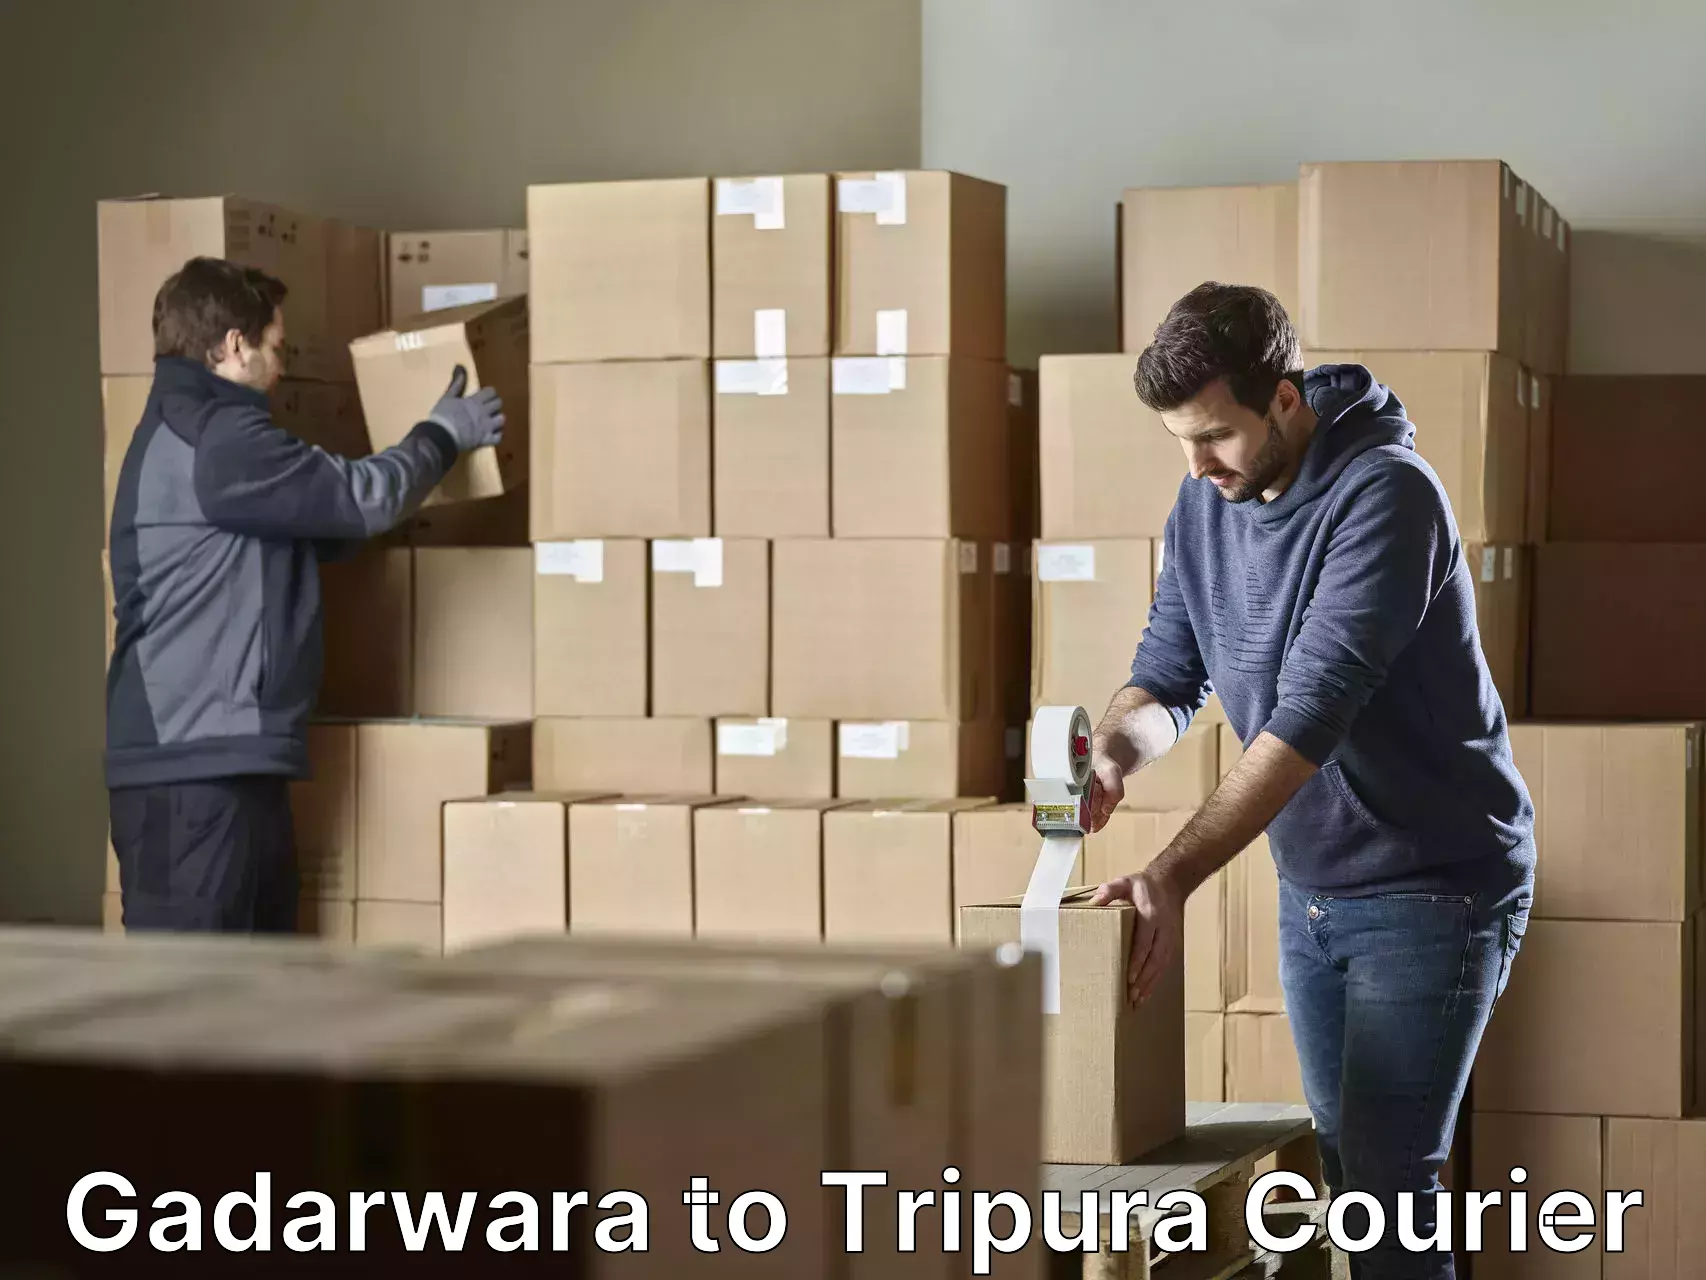 Moving and handling services Gadarwara to Tripura